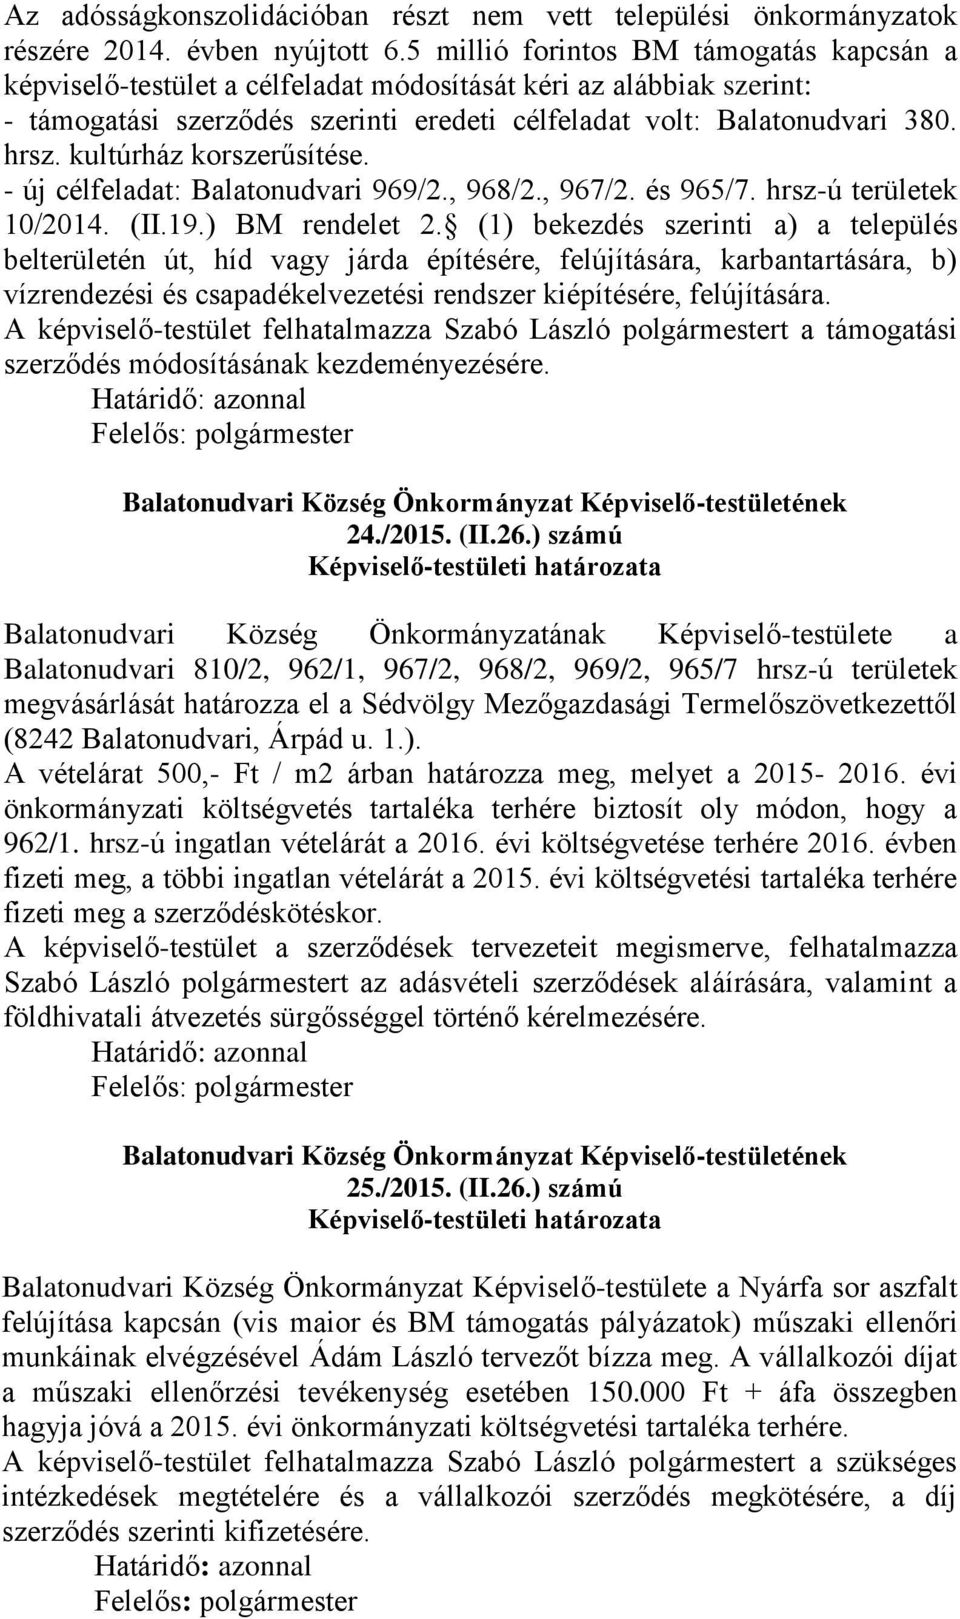 kultúrház korszerűsítése. - új célfeladat: Balatonudvari 969/2., 968/2., 967/2. és 965/7. hrsz-ú területek 10/2014. (II.19.) BM rendelet 2.